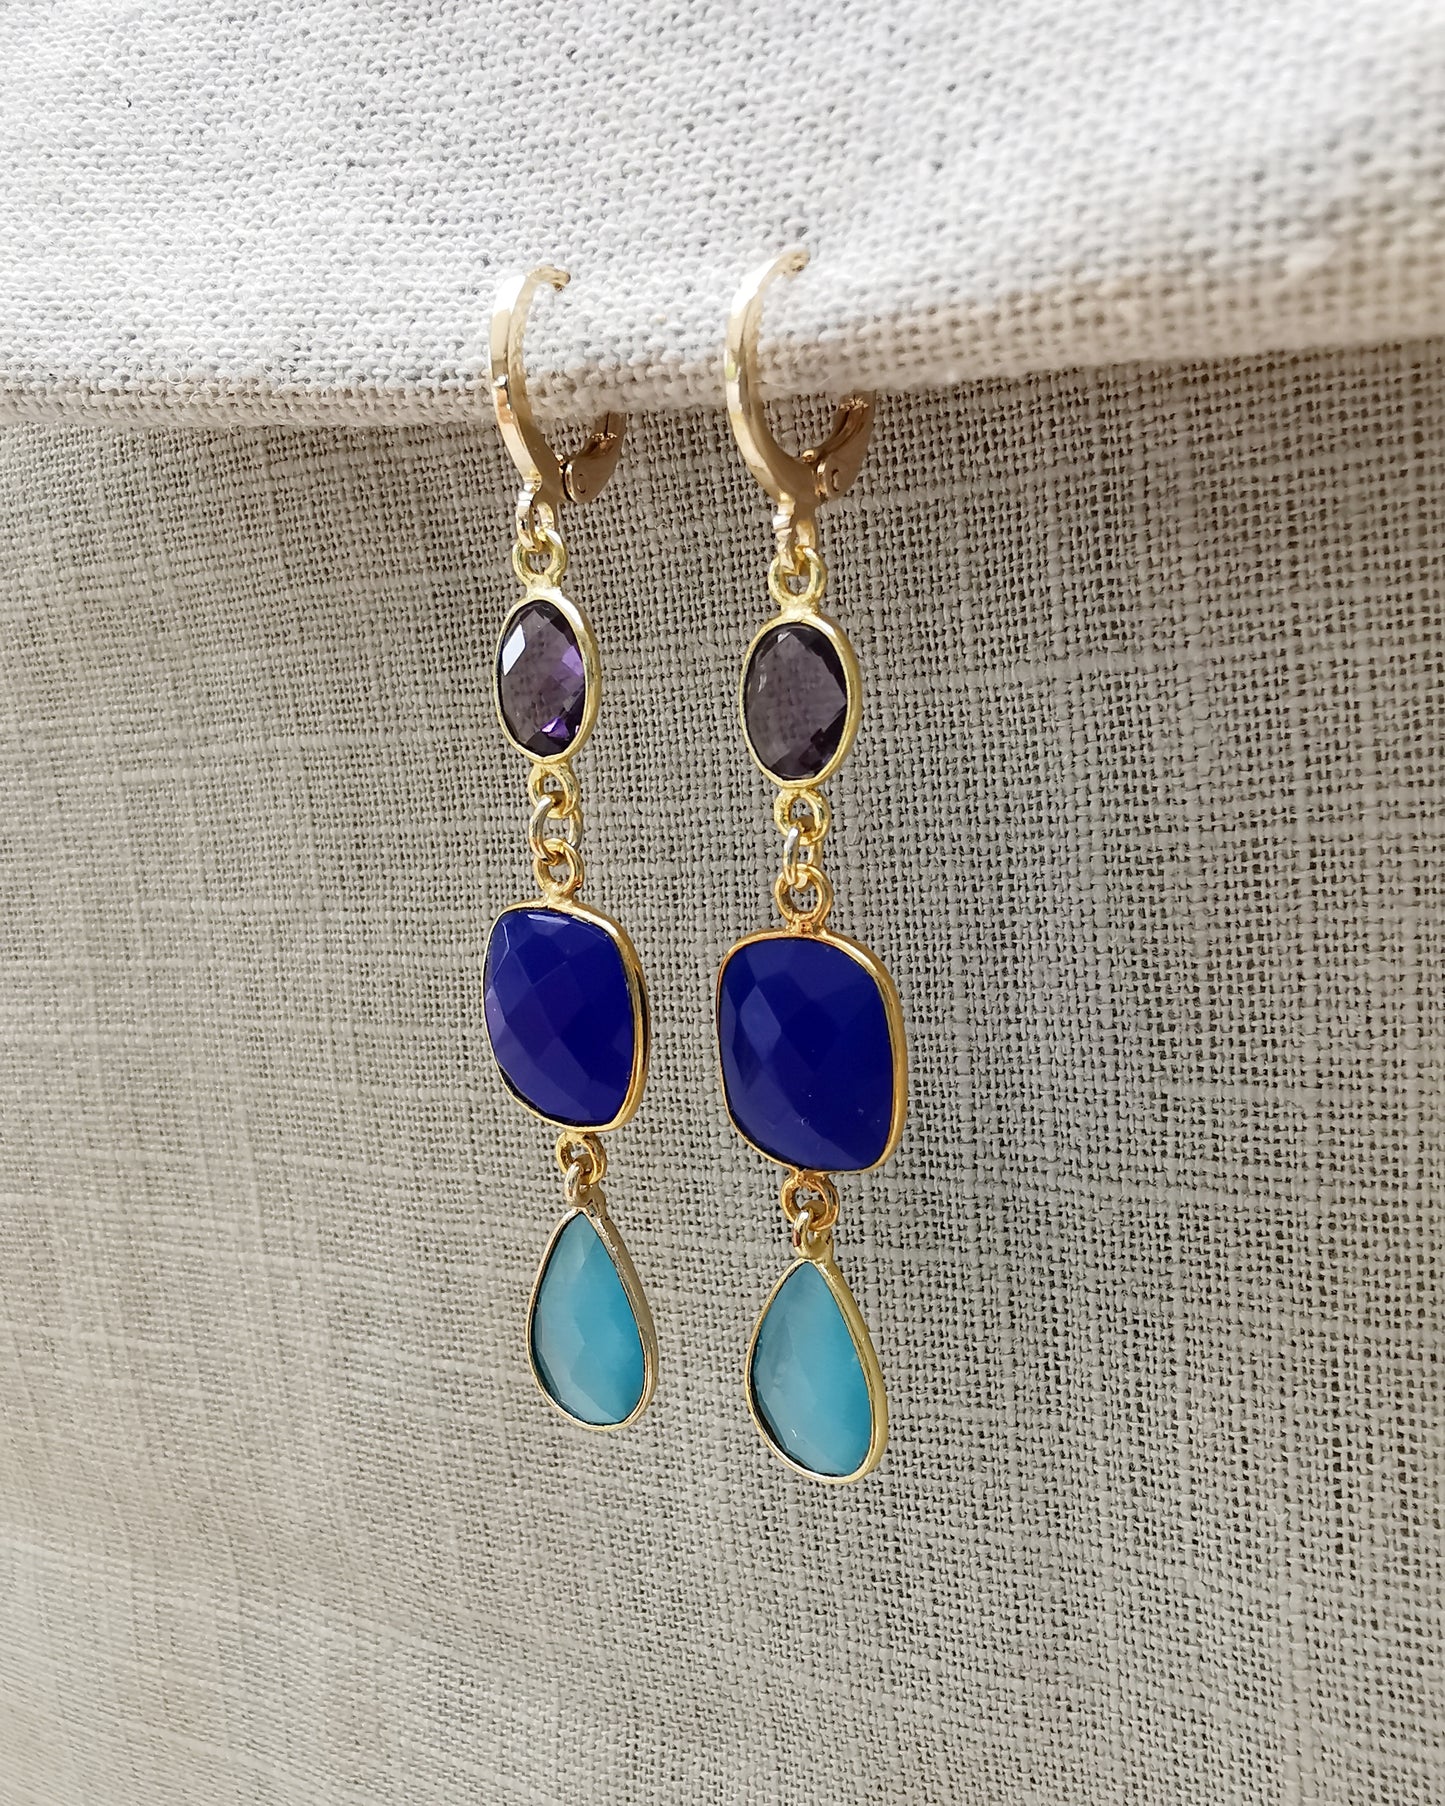 Gemstone Long Earrings Amethyst + Blue ultramarine Chalcedony + Light Blue Monalisa stone.